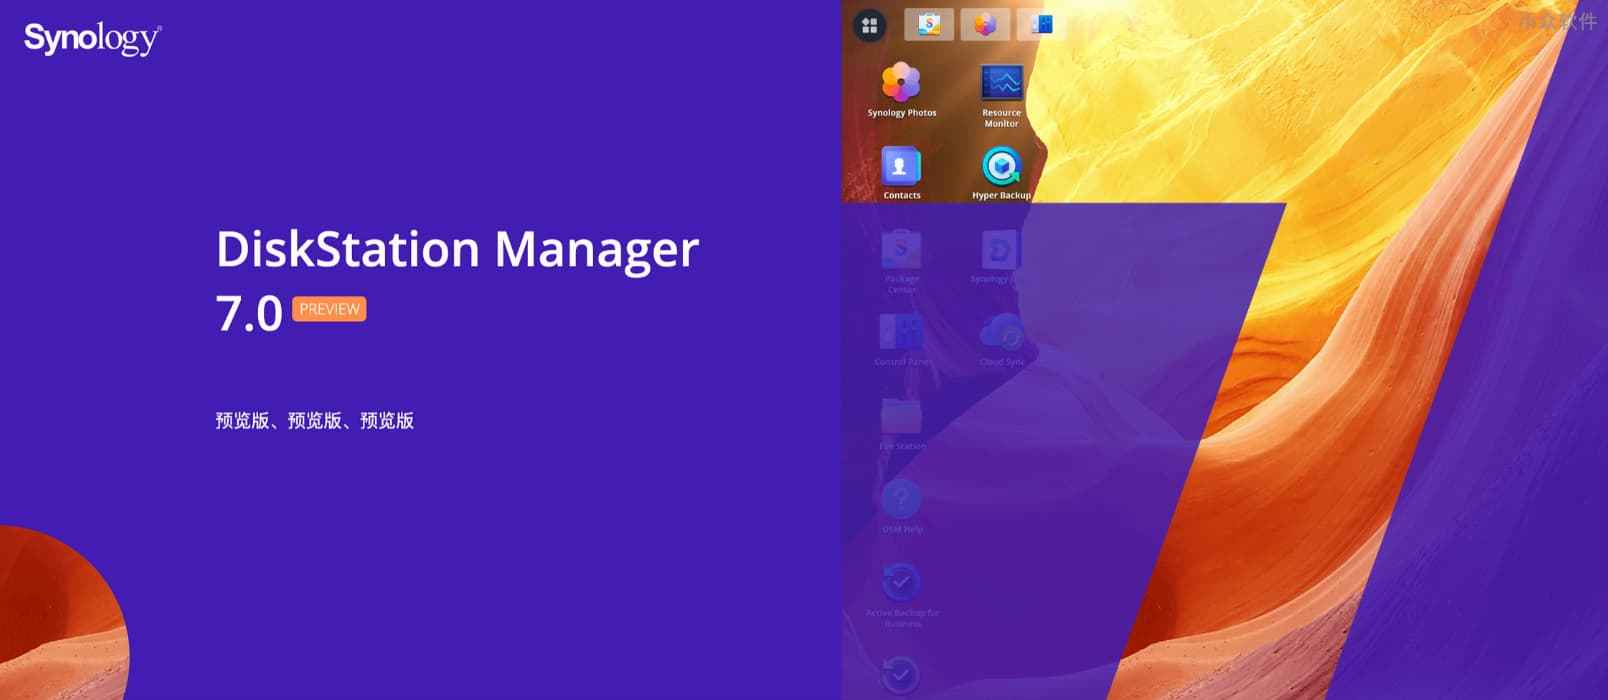 群晖 DiskStation Manager 7.0 预览版开放注册